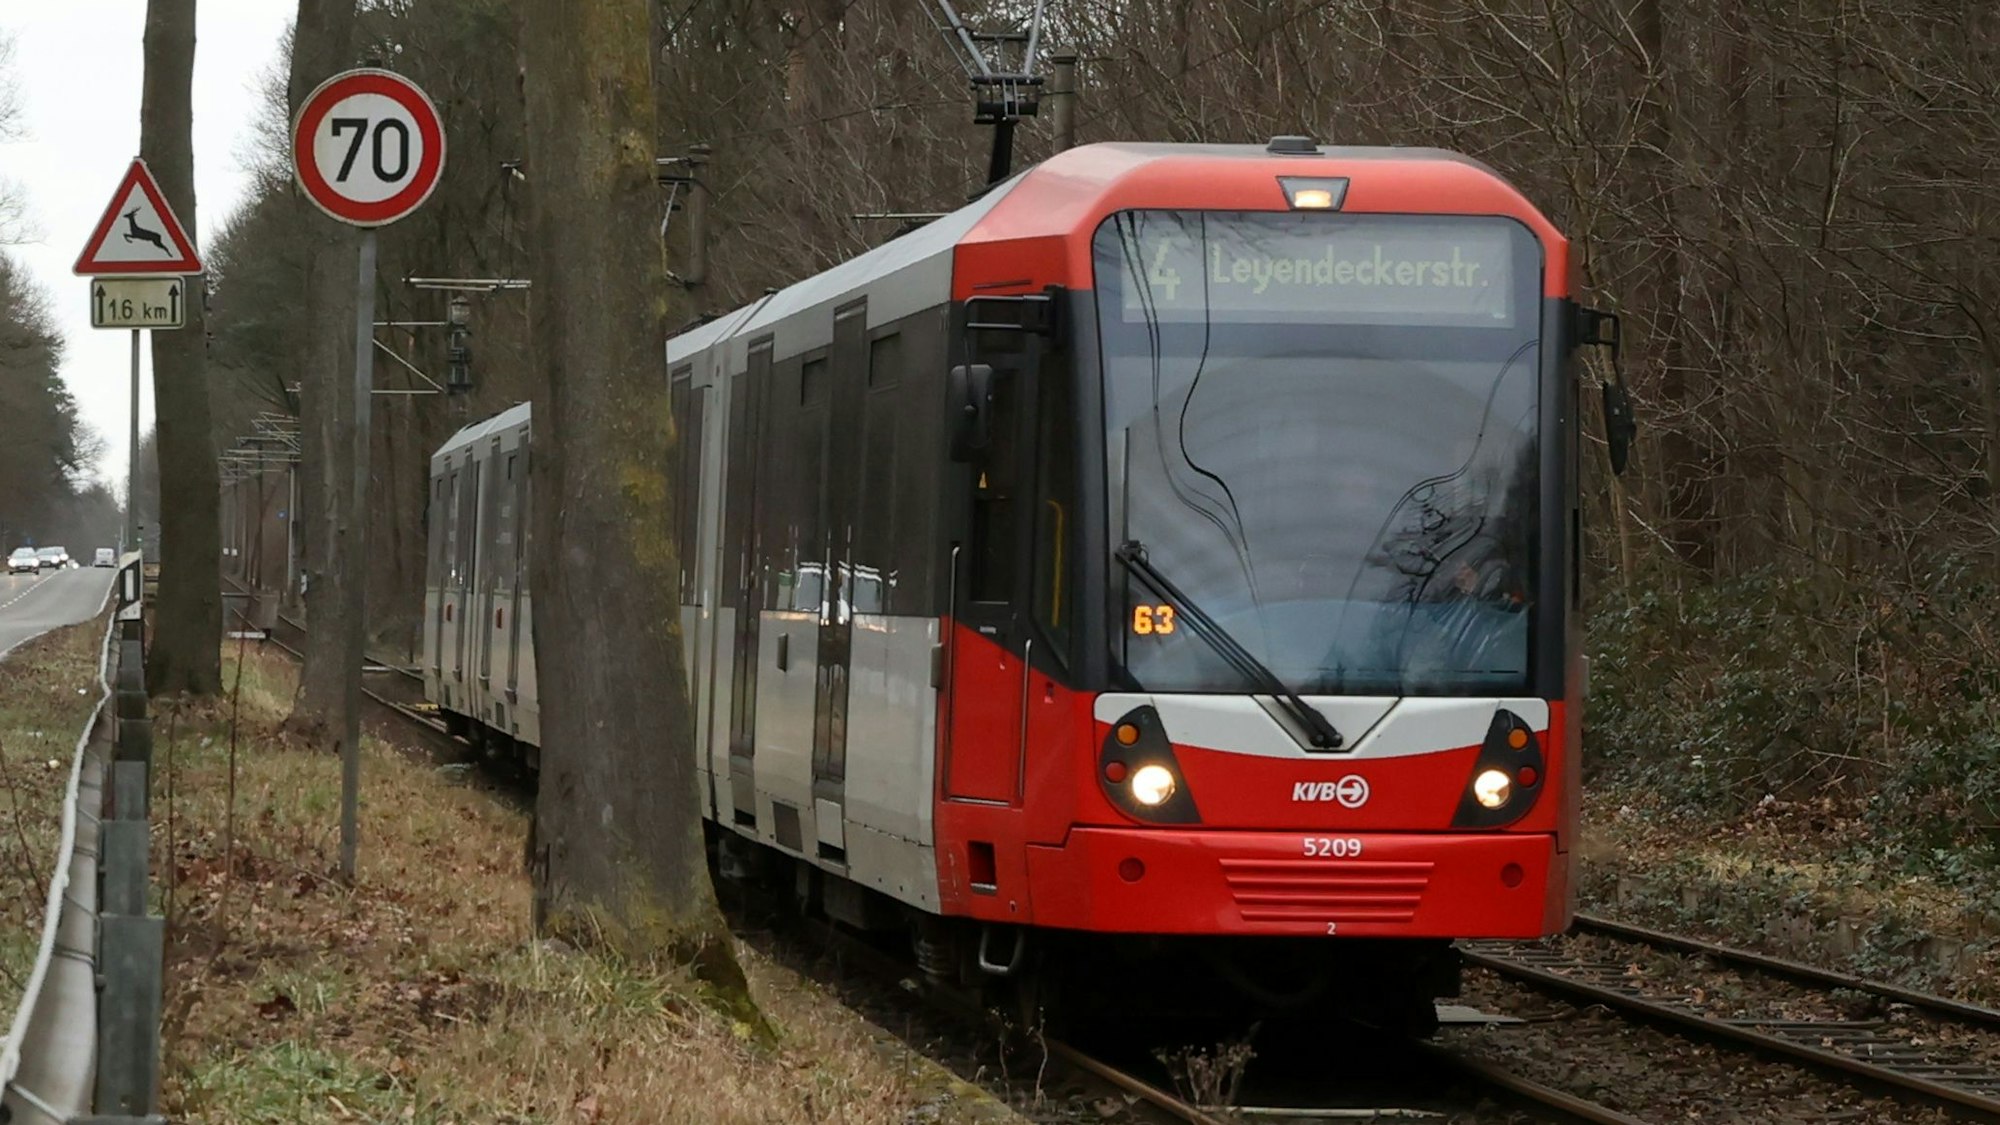 Die Straßenbahn der Kölner Verkehrsbetriebe (KVB) fährt hier direkt neben der Straße.